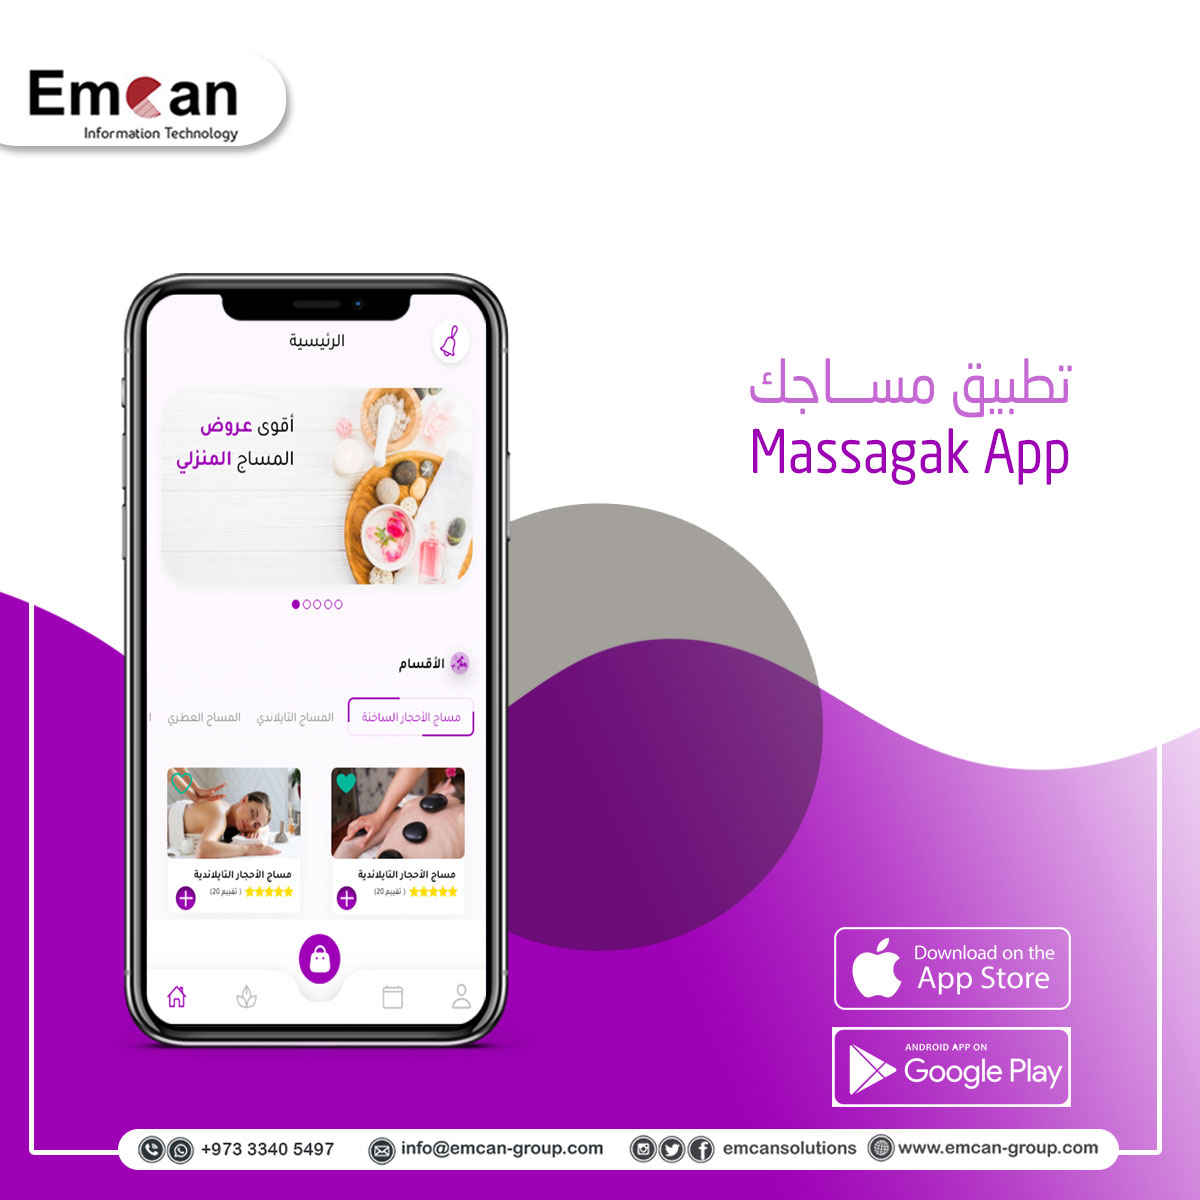 massagak App